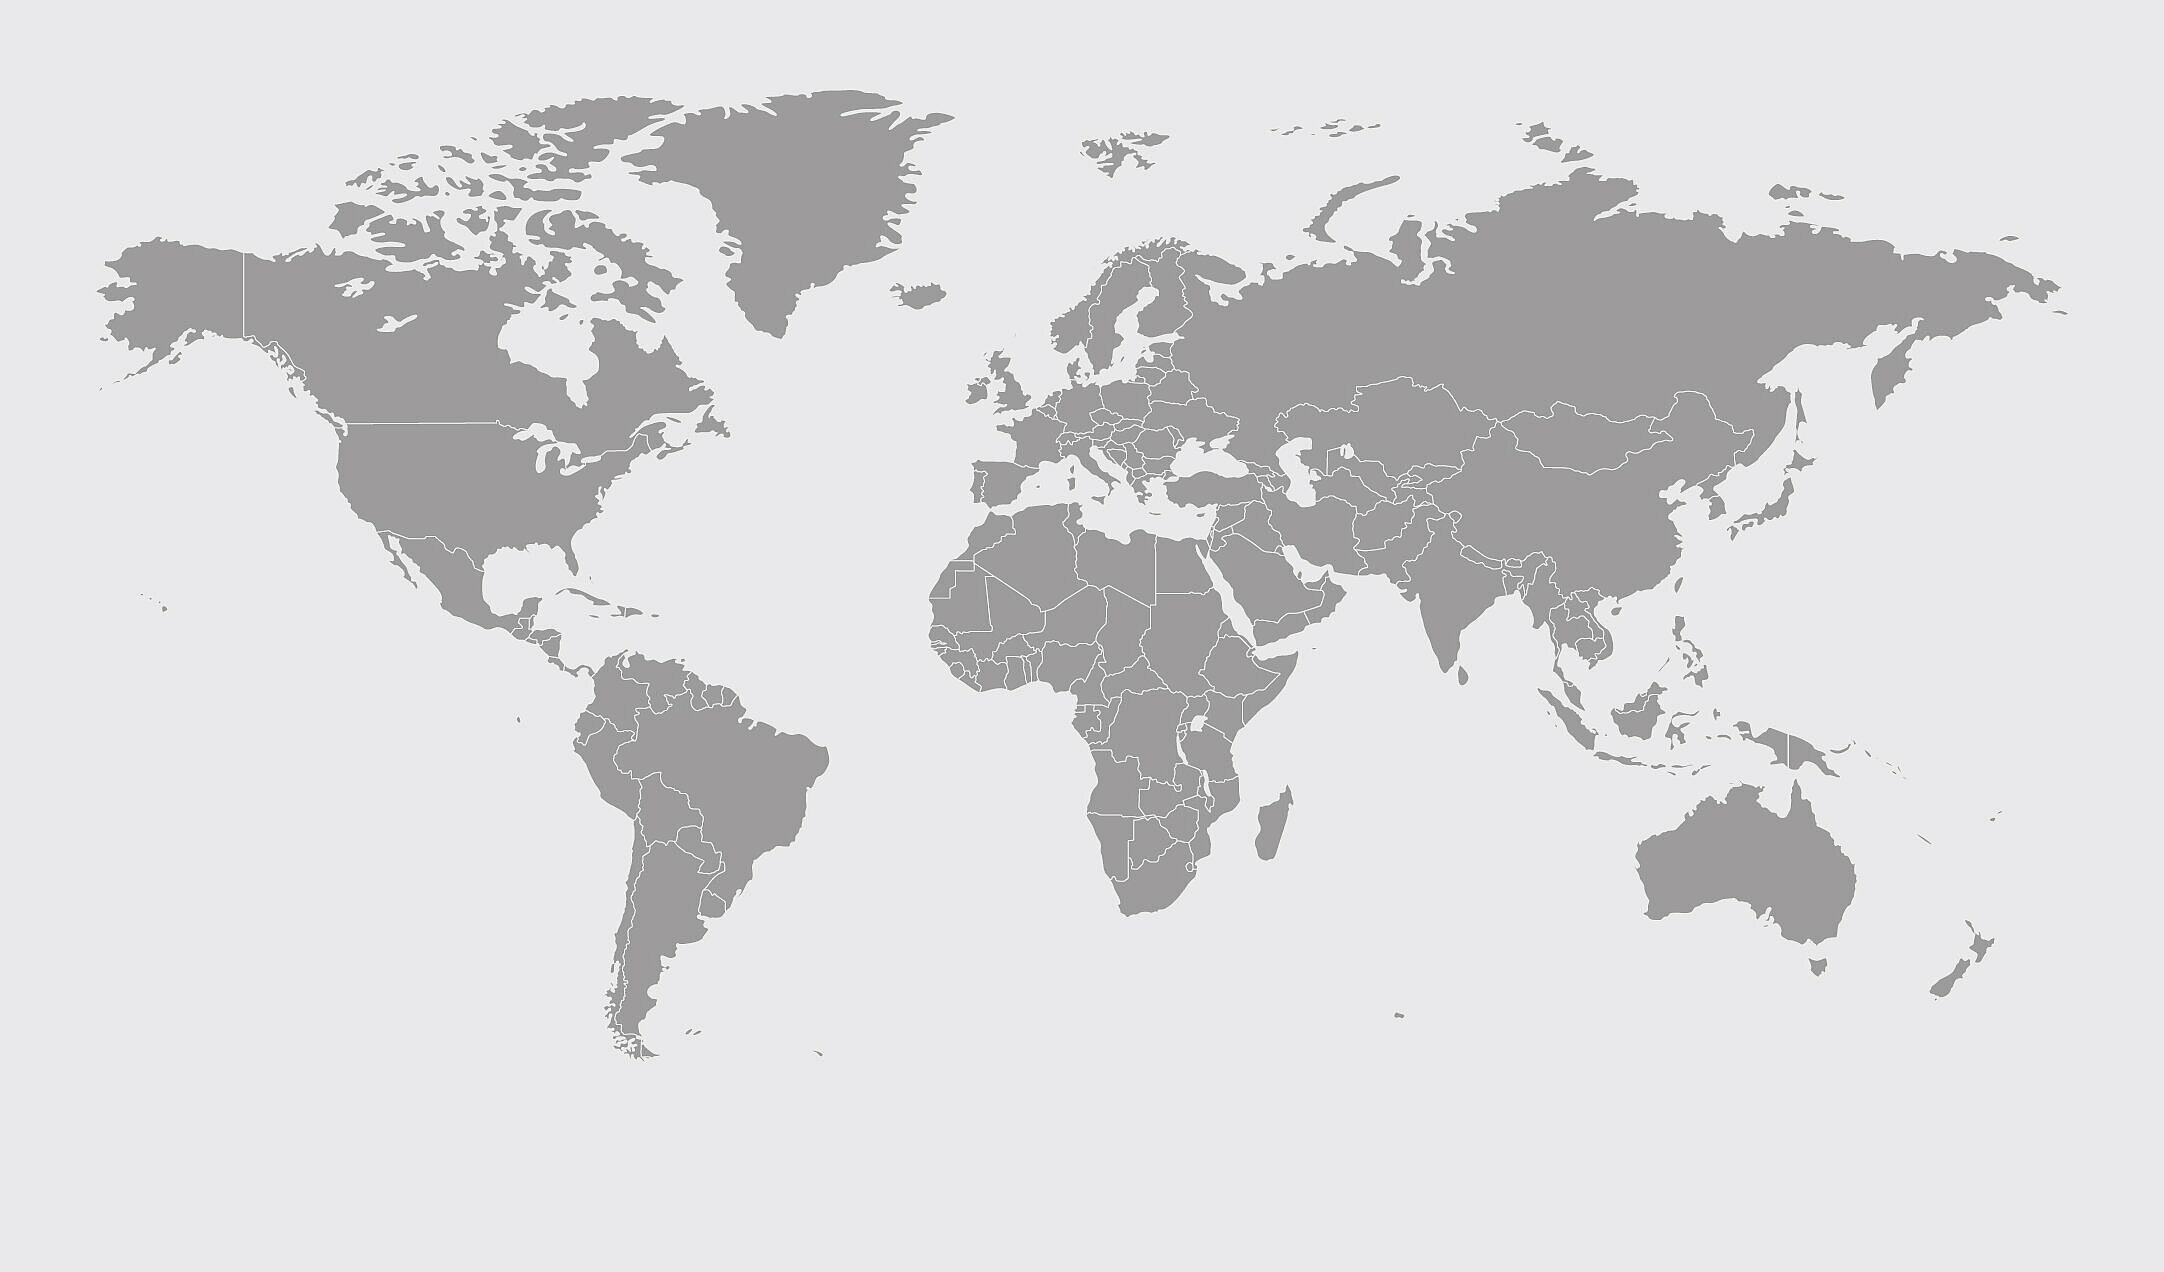 Mapa del mundo en gris